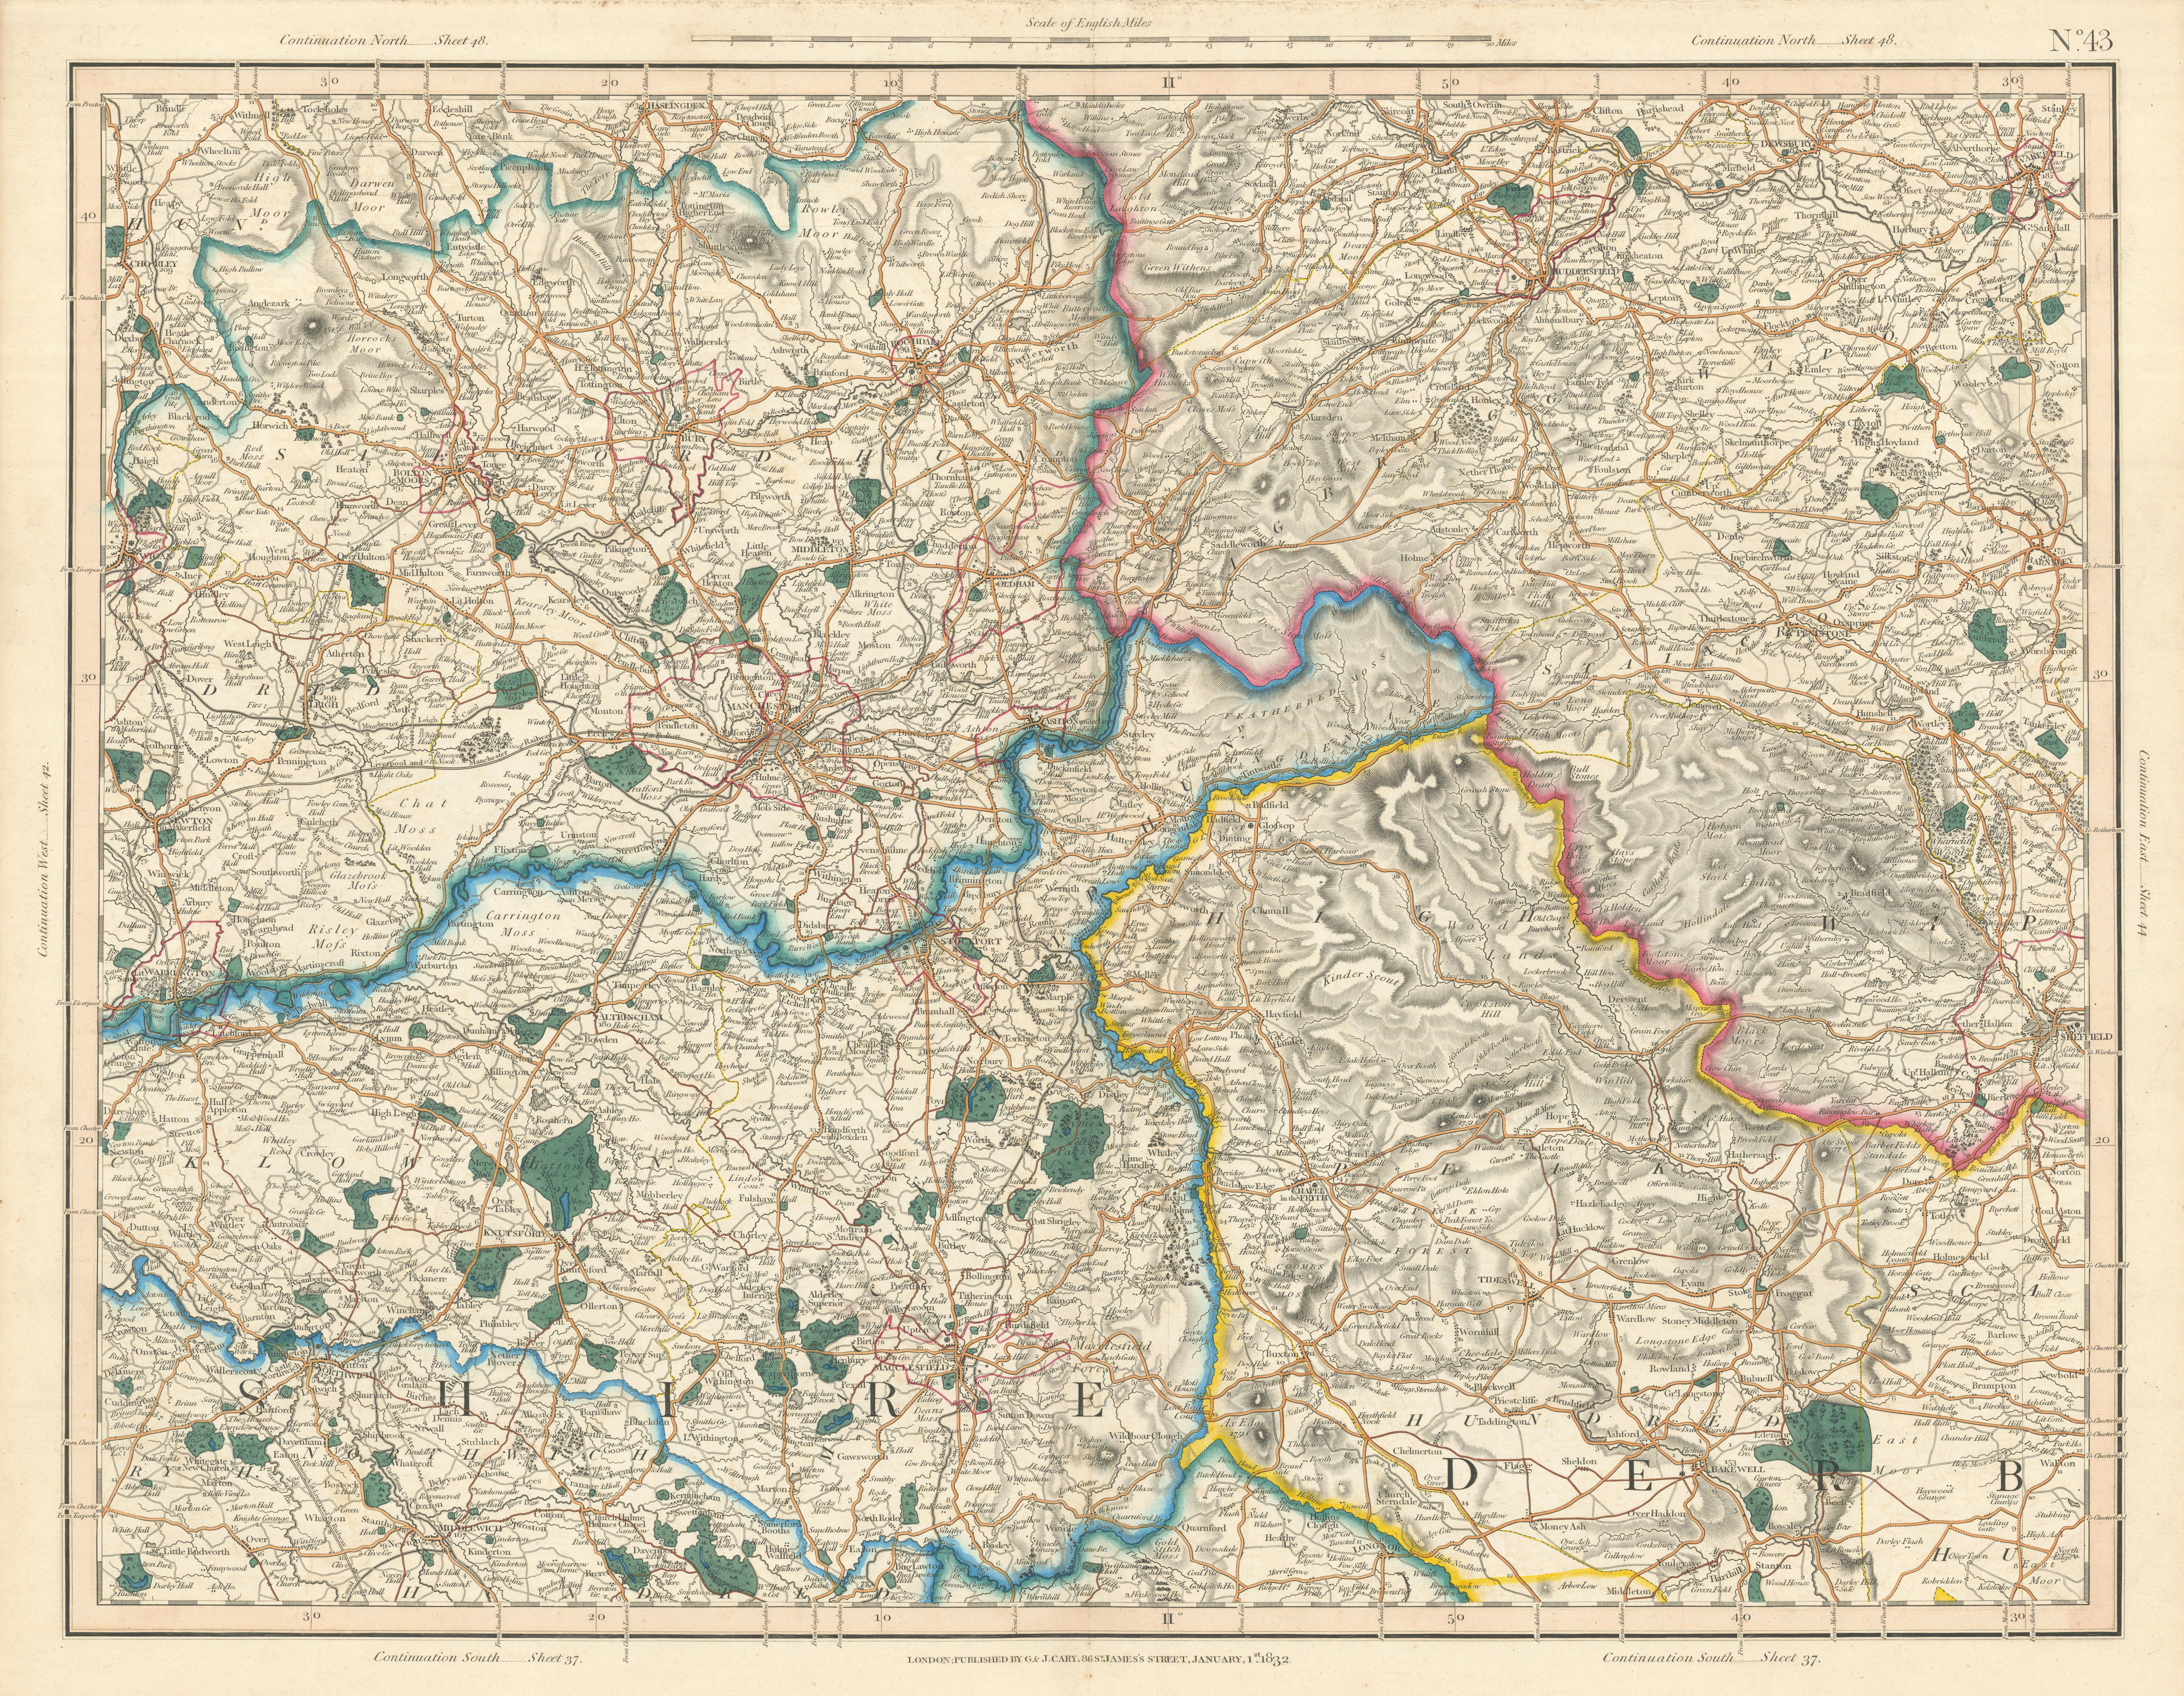 Lancashire | Antique Lancashire county maps, old road maps, Liverpool &  Manchester city plans & vintage art prints